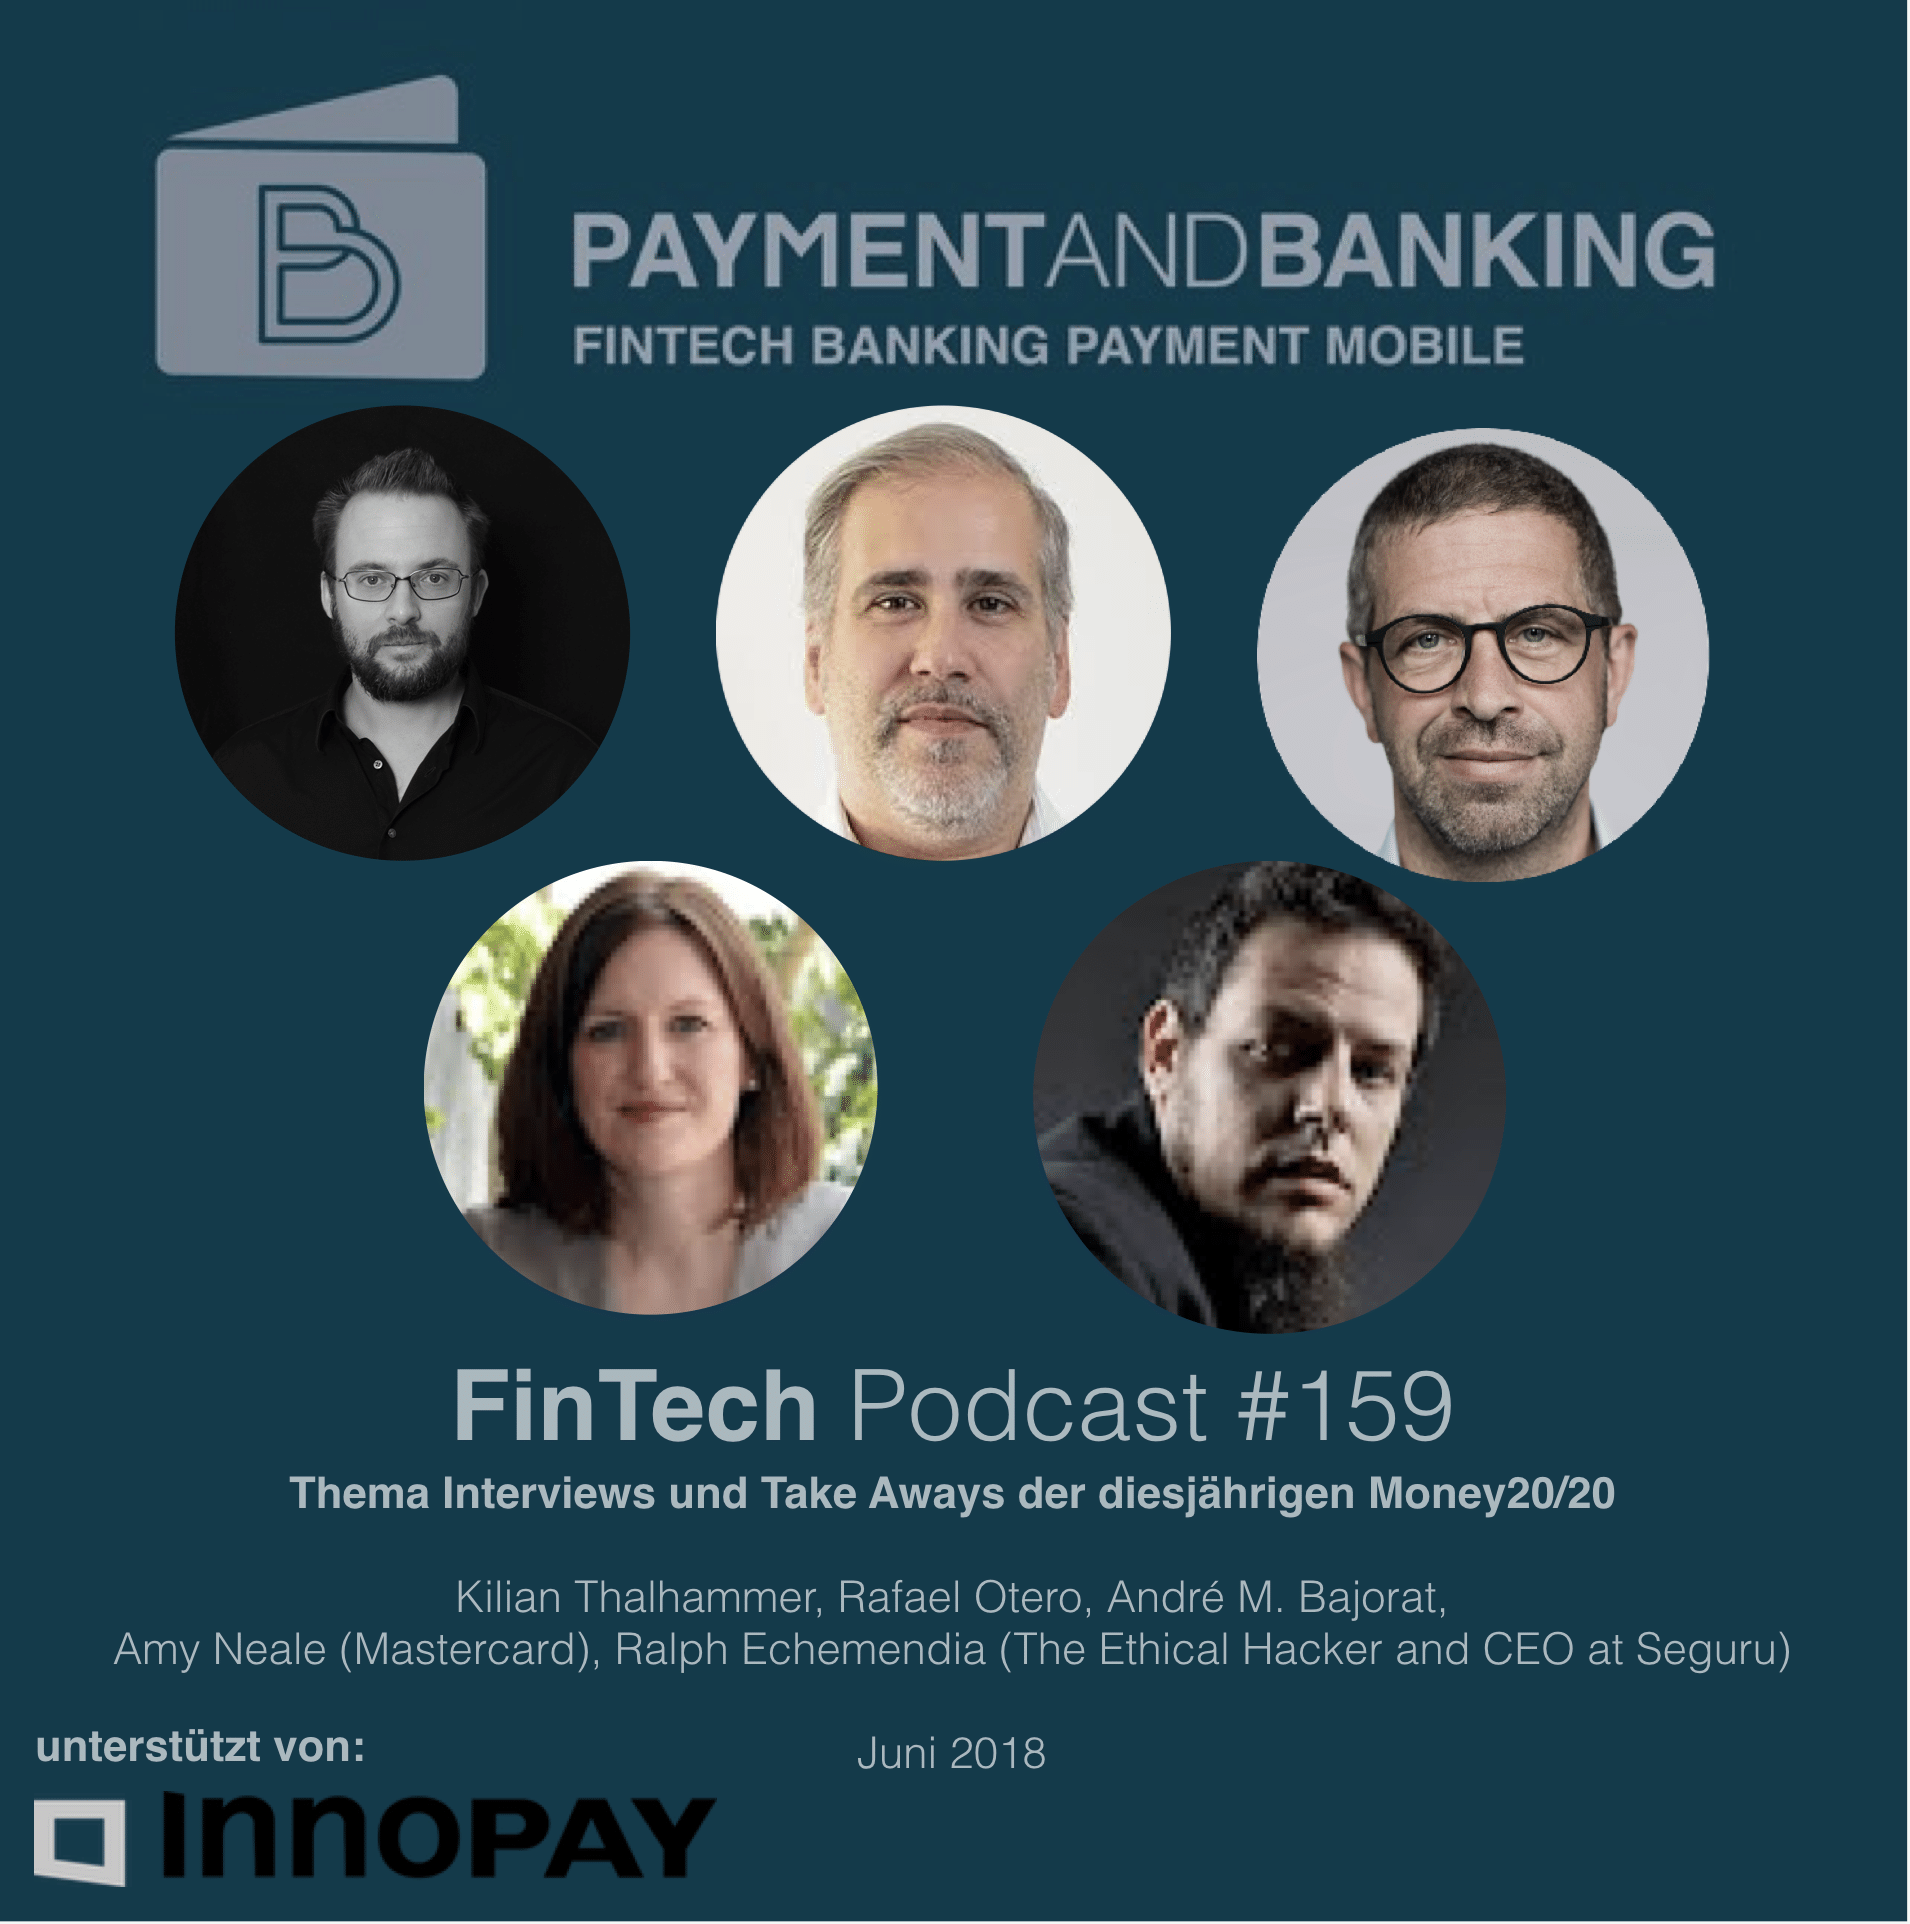 FinTech Podcast #159 - Interviews und Take Aways der diesjährigen Money20/20